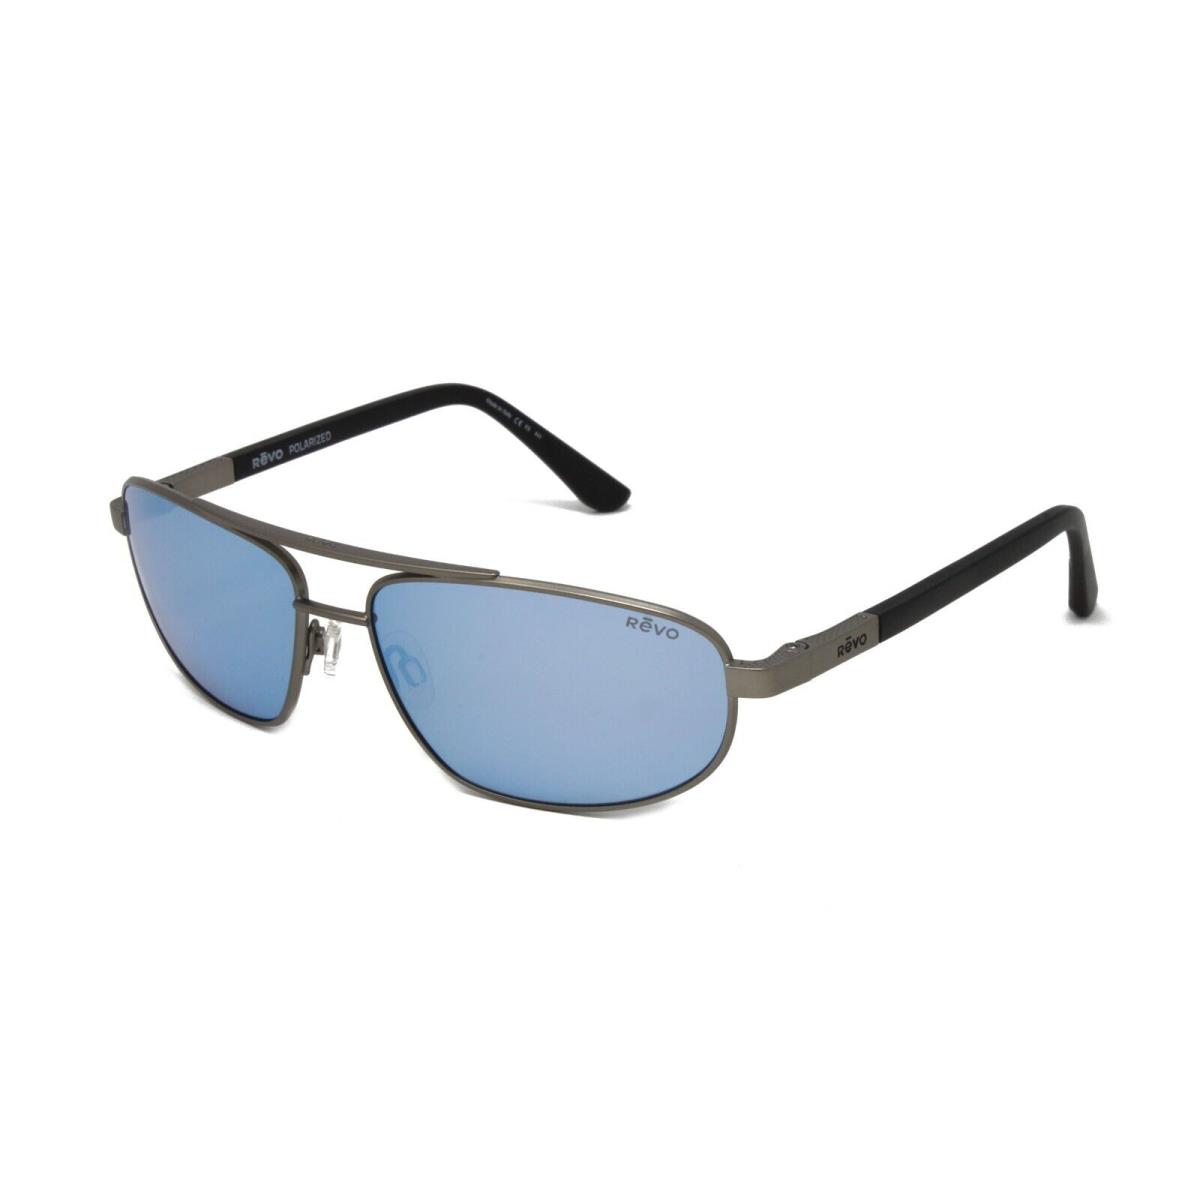 Revo Sunglasses Nash RE1013 00BL Gunmetal Blue Water Polarized Lens 40mm - Frame: Gray, Lens: Blue